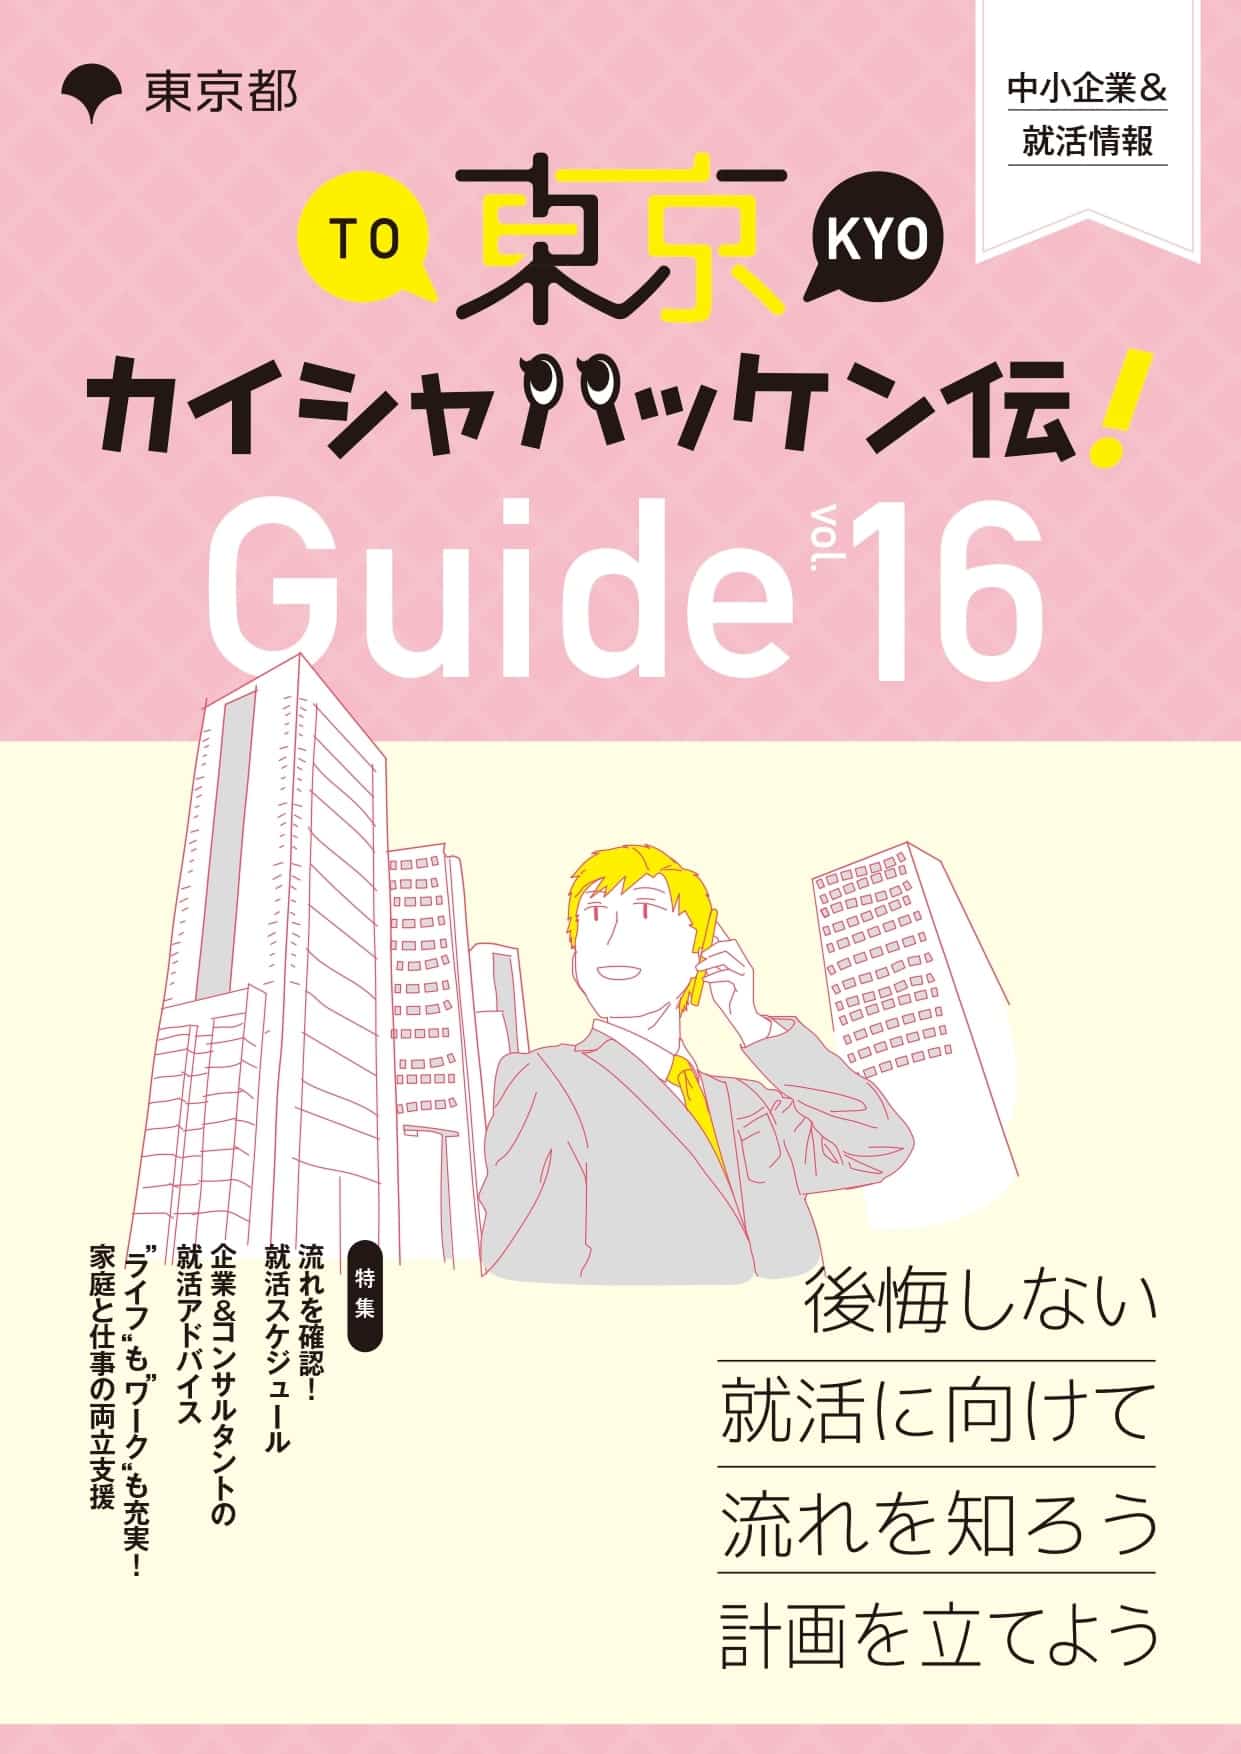 東京カイシャハッケン伝！GUIDE vol16